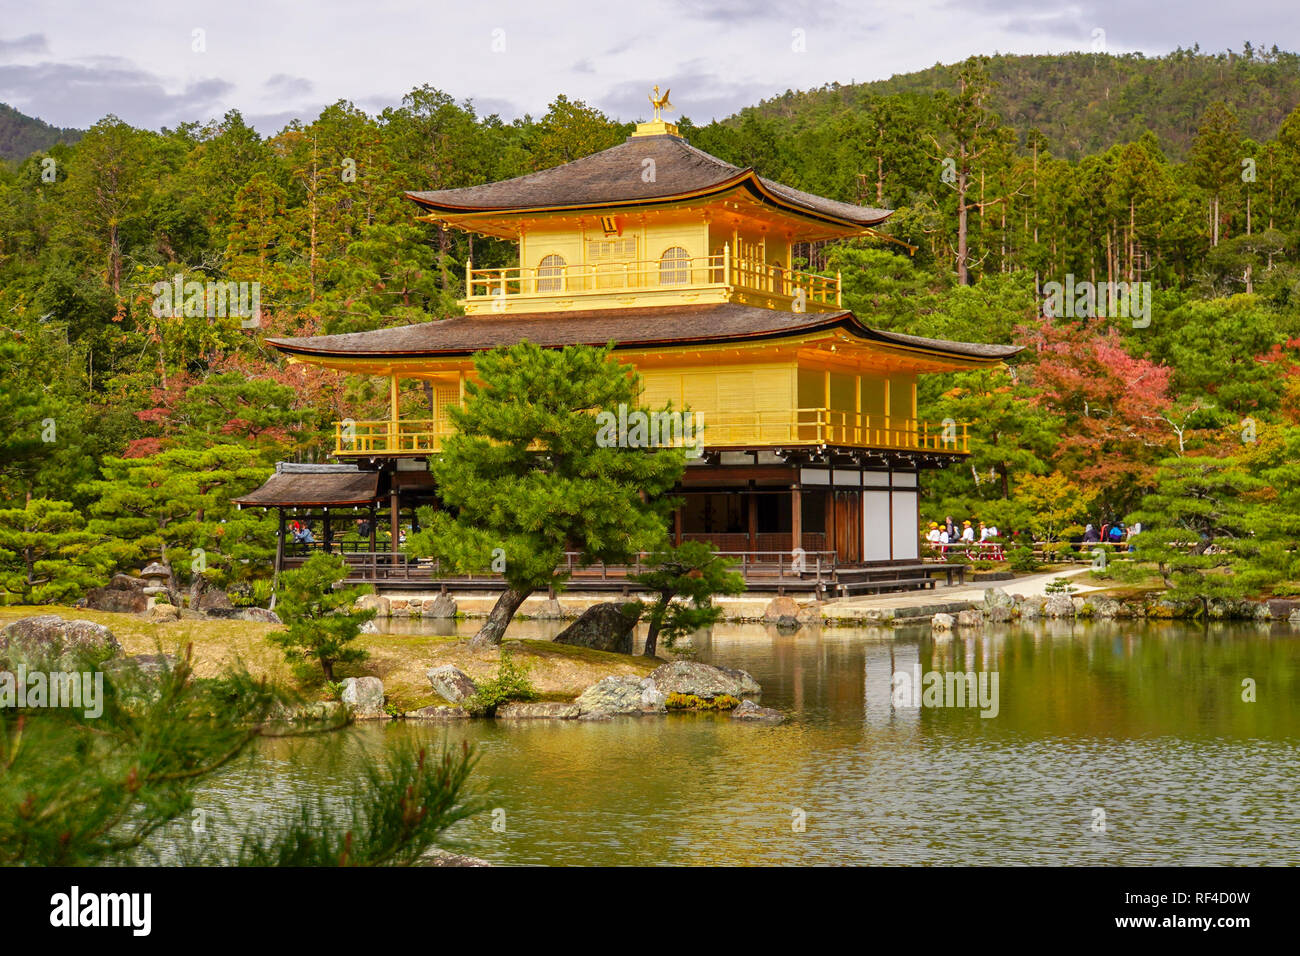 Giappone, Kyoto, Zen tempio Buddista Kinkaku-ji (Tempio del Padiglione Dorato), Aka Rokuon-ji (cervo giardino tempio) Foto Stock